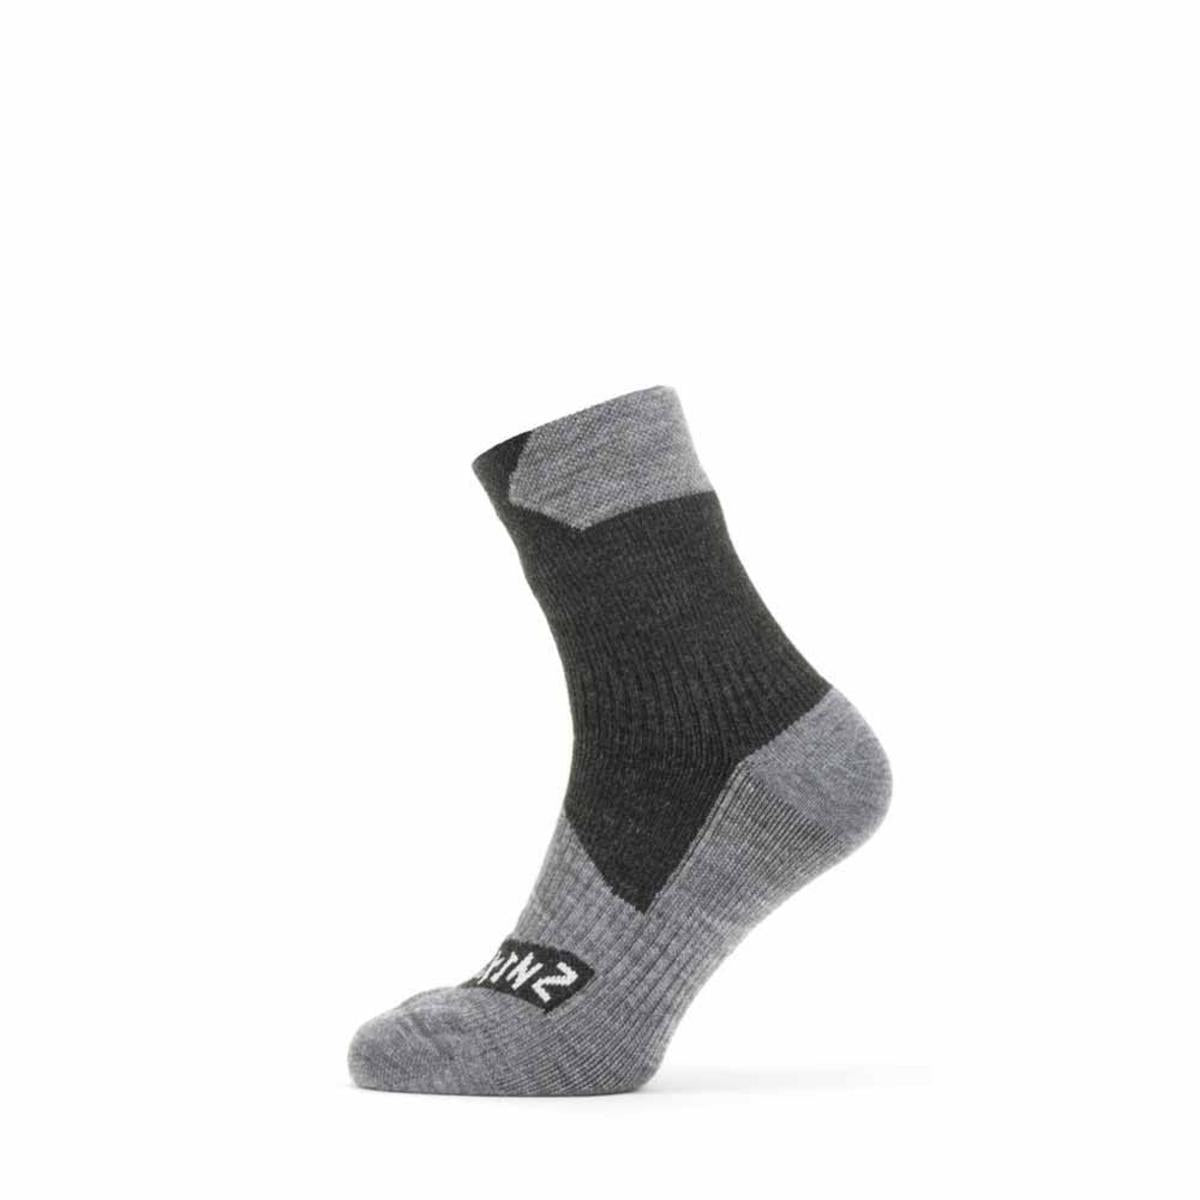 SealSkinz Bircham Waterproof All Weather Ankle Length Socks